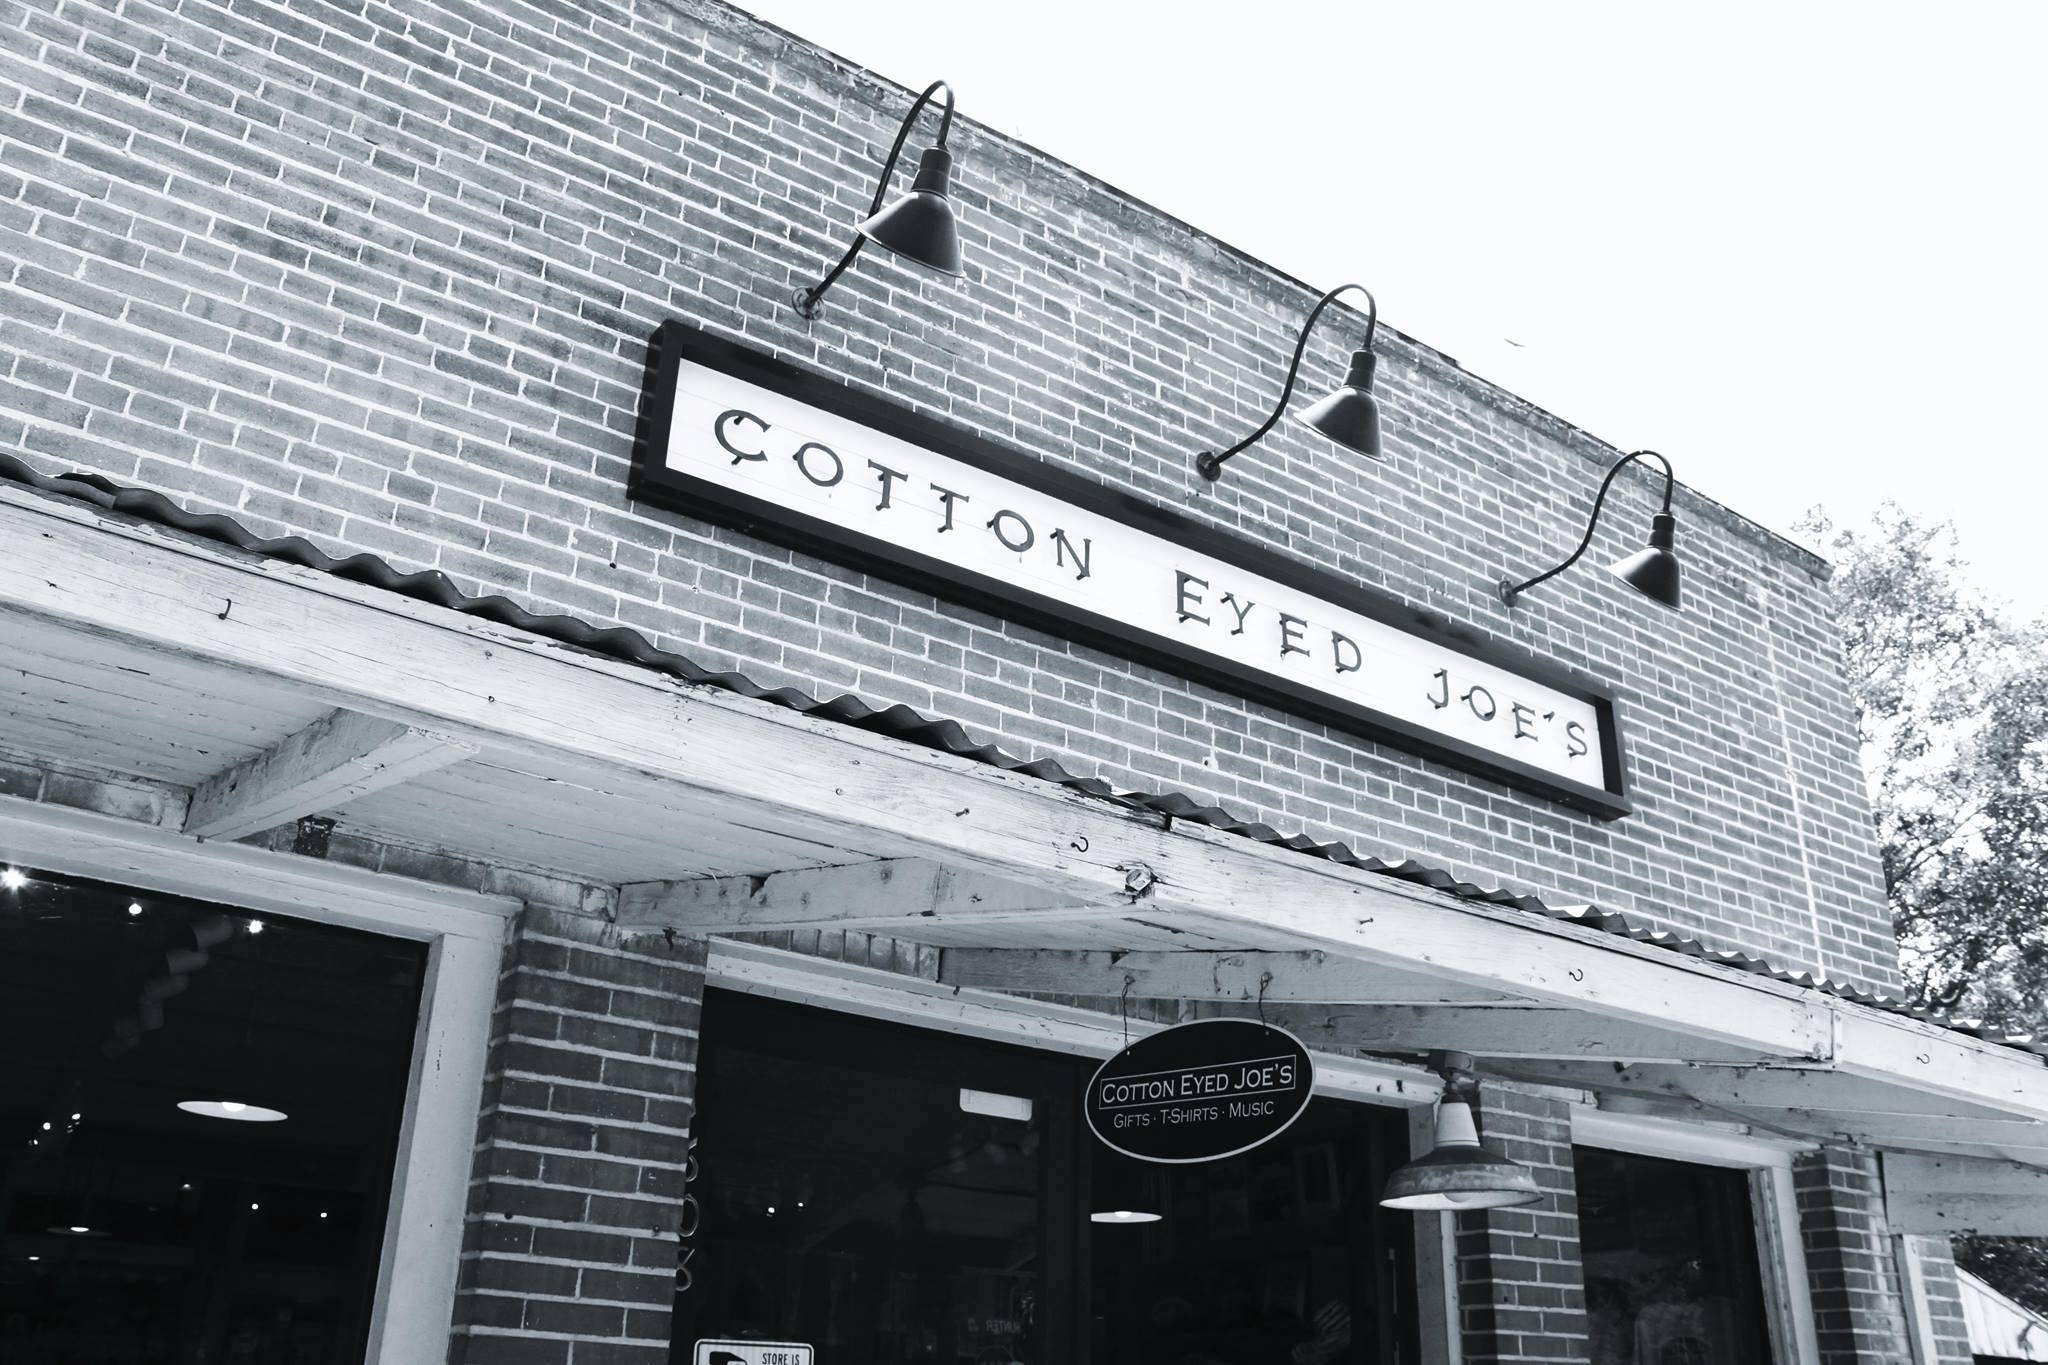 Cotton Eyed Joe's